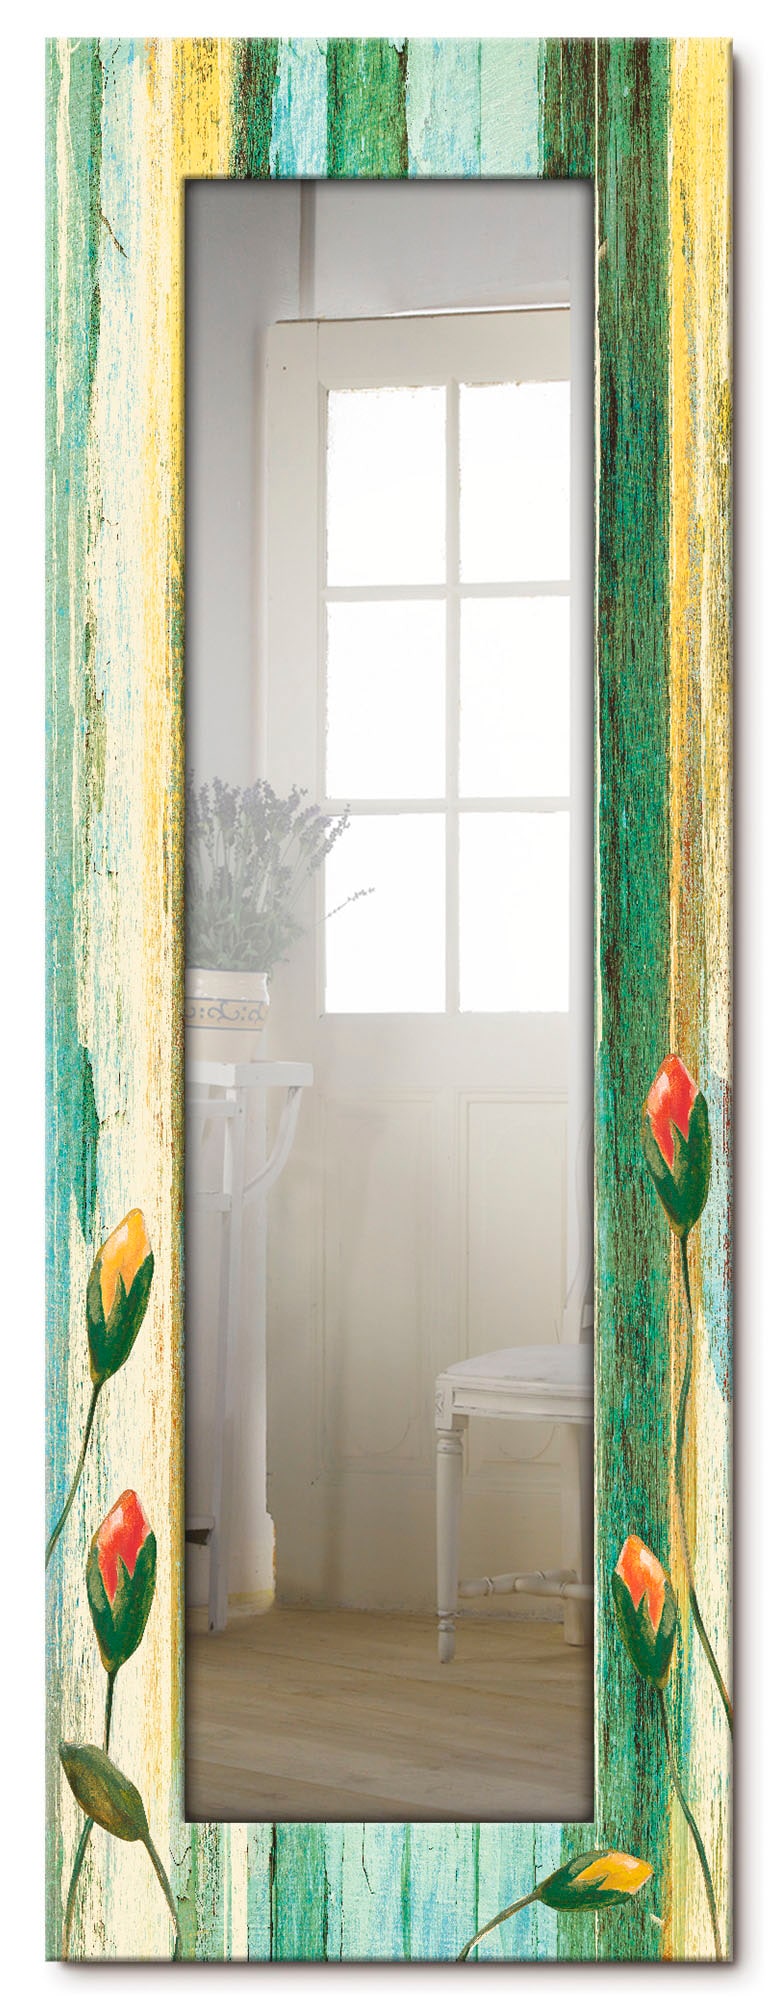 Artland Dekospiegel »Bunte Blumen«, gerahmter Ganzkörperspiegel, Wandspiegel, mit Motivrahmen, Landhaus